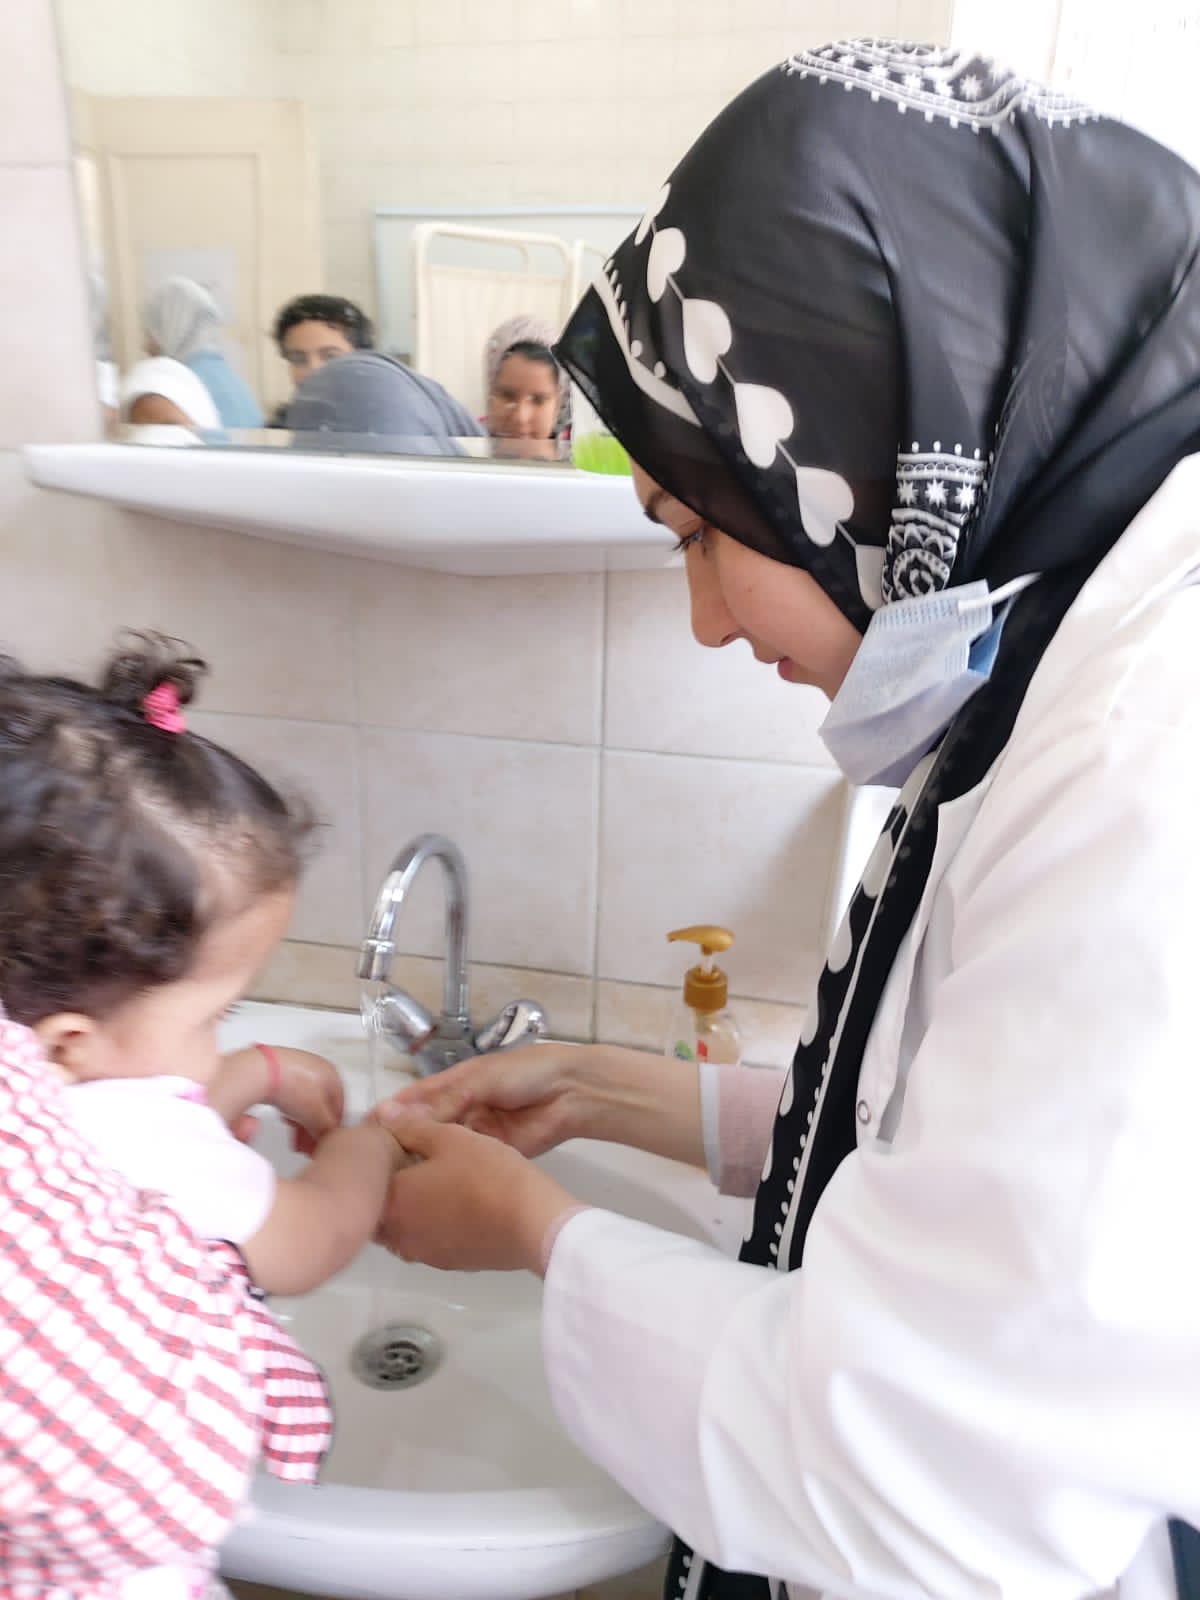 صحة الإسكندرية تنظم ندوة للأطفال بمناسبة اليوم العالمي لغسل الأيدي